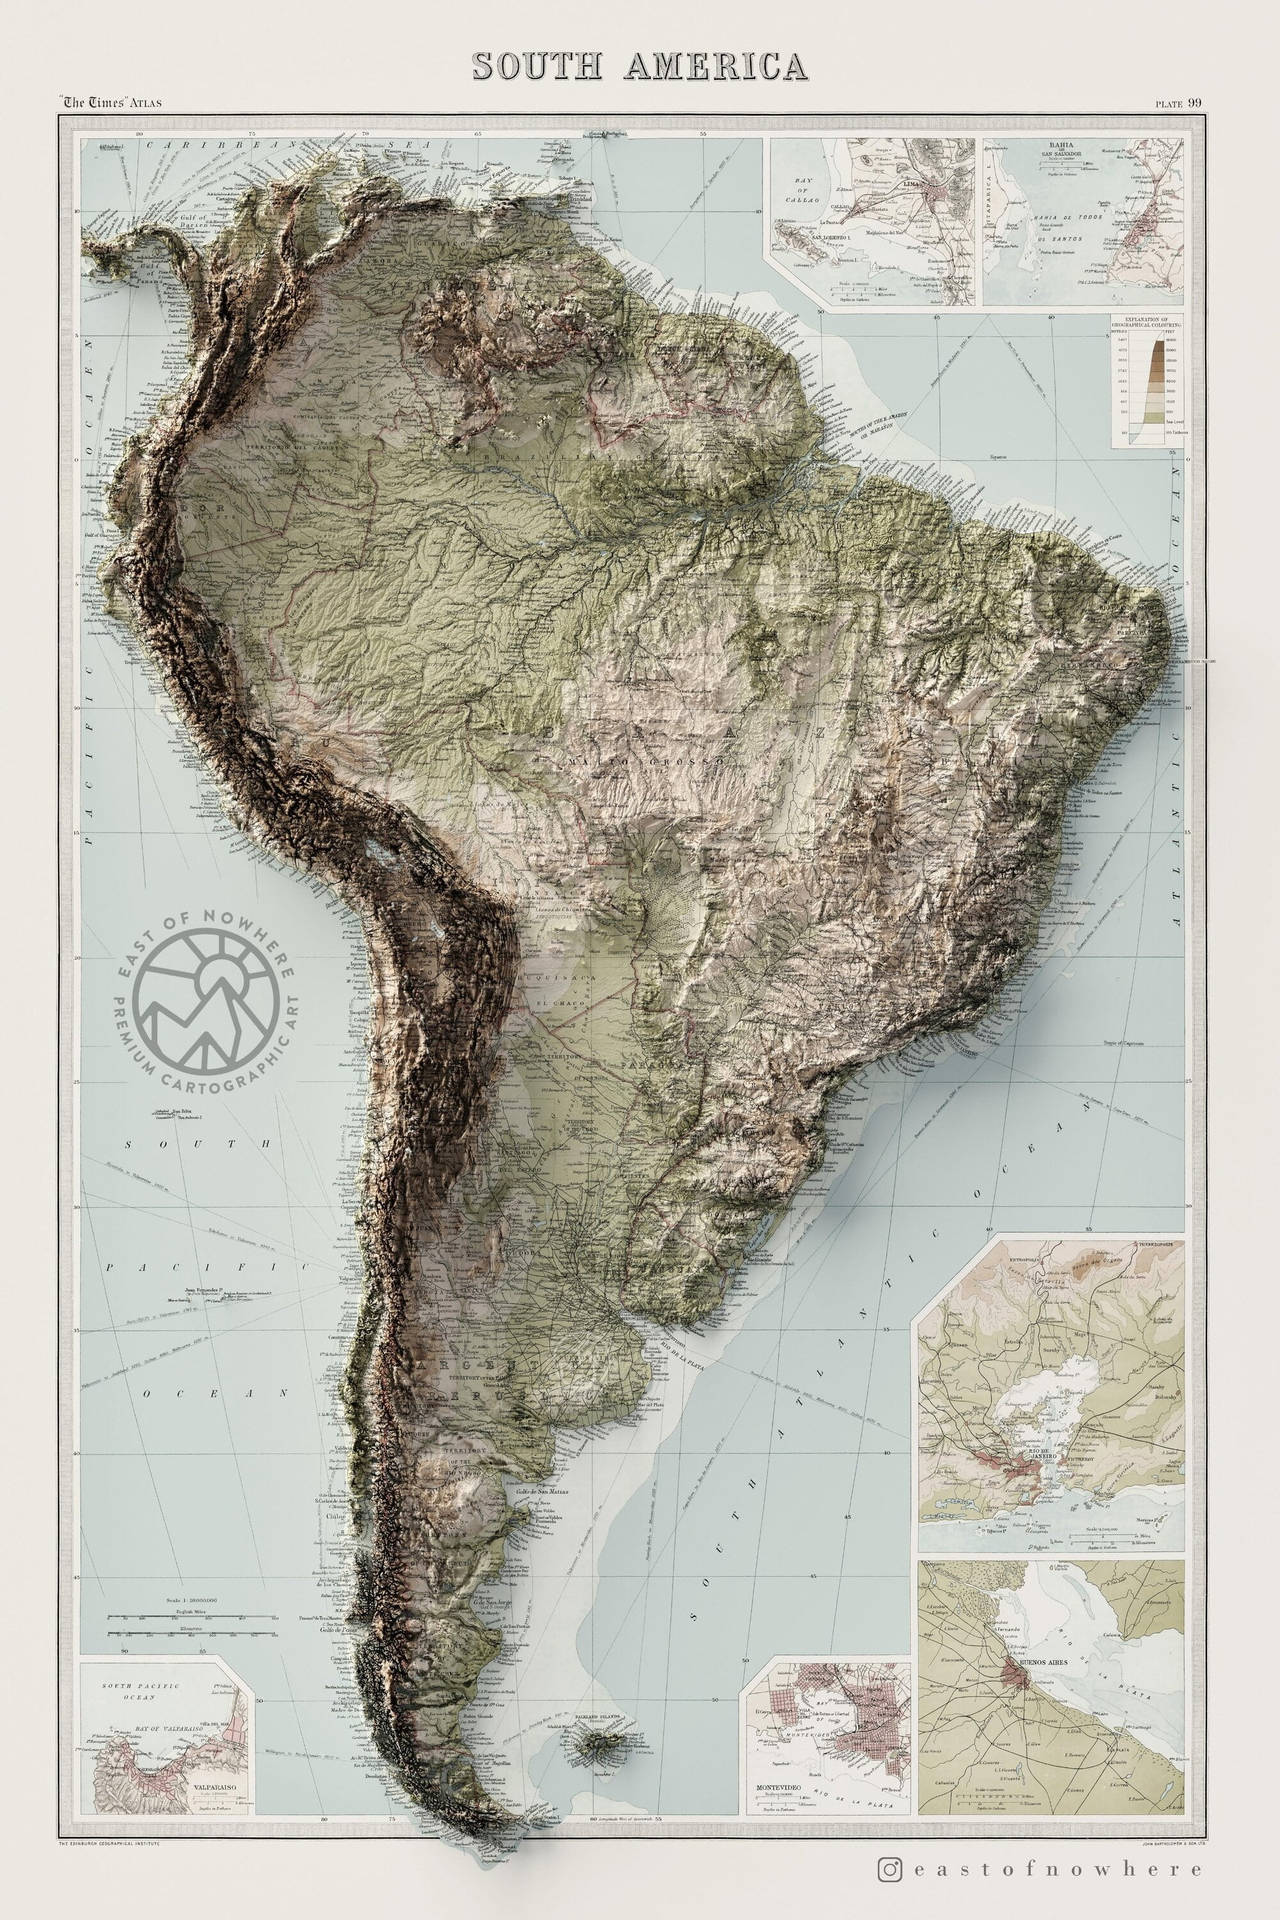 Topografisk kort over Sydamerika Wallpaper